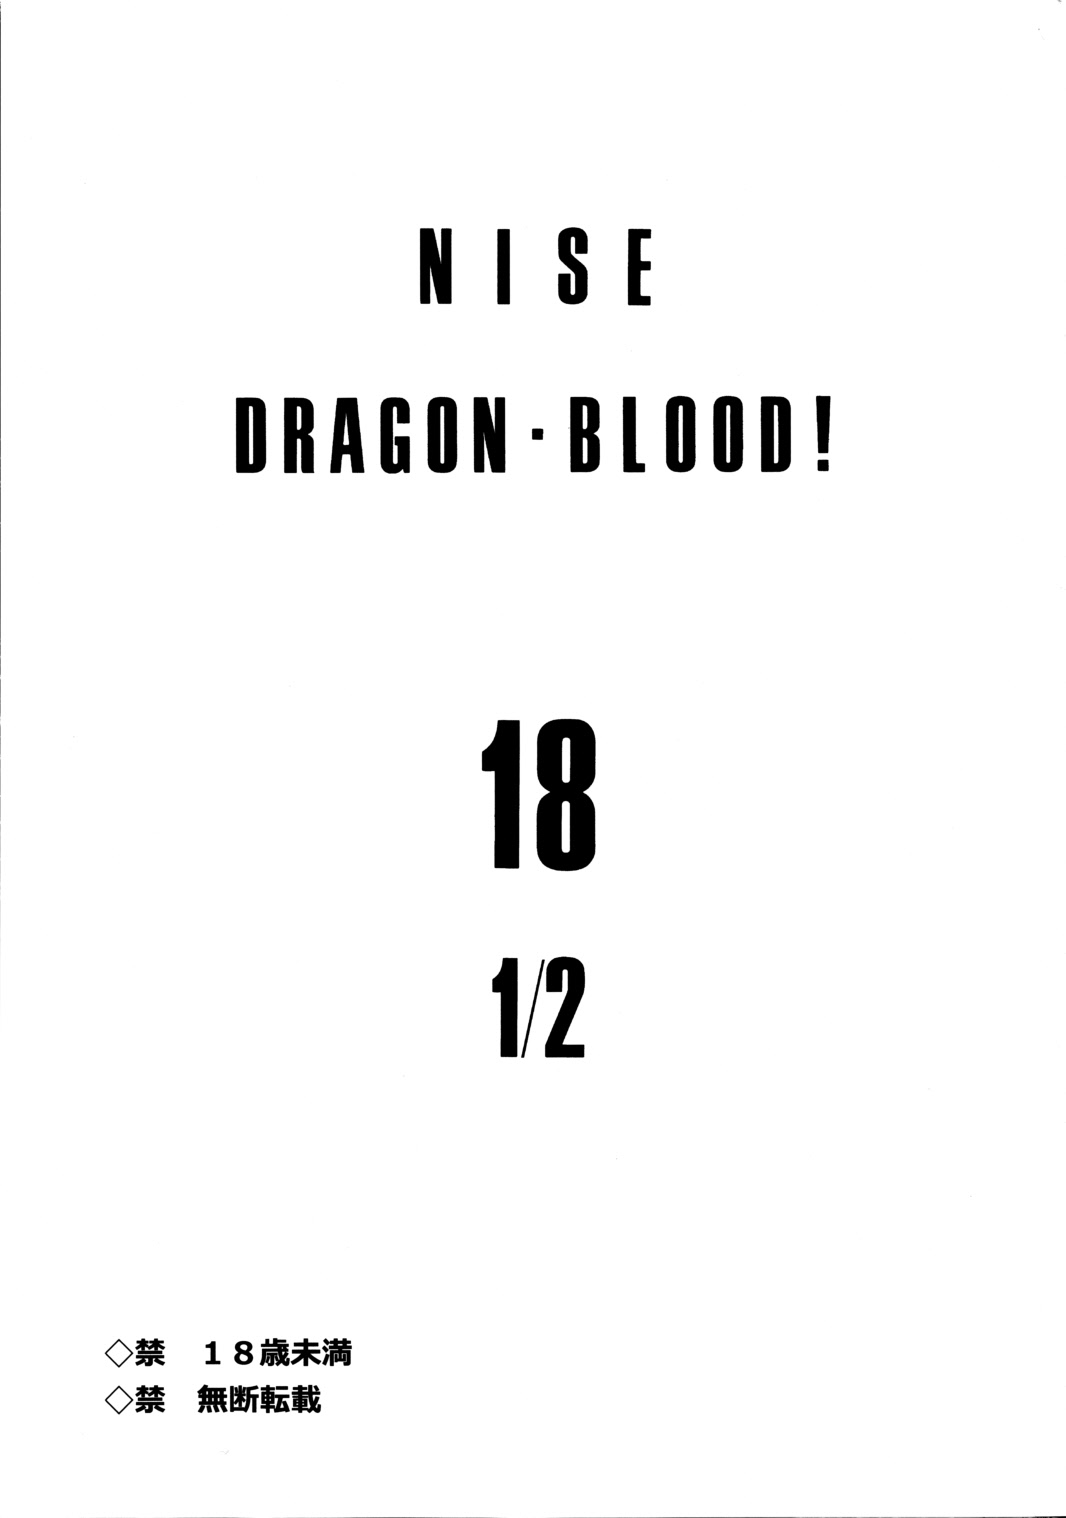 (C80) [LTM. (たいらはじめ)] ニセ DRAGON・BLOOD！18 1/2